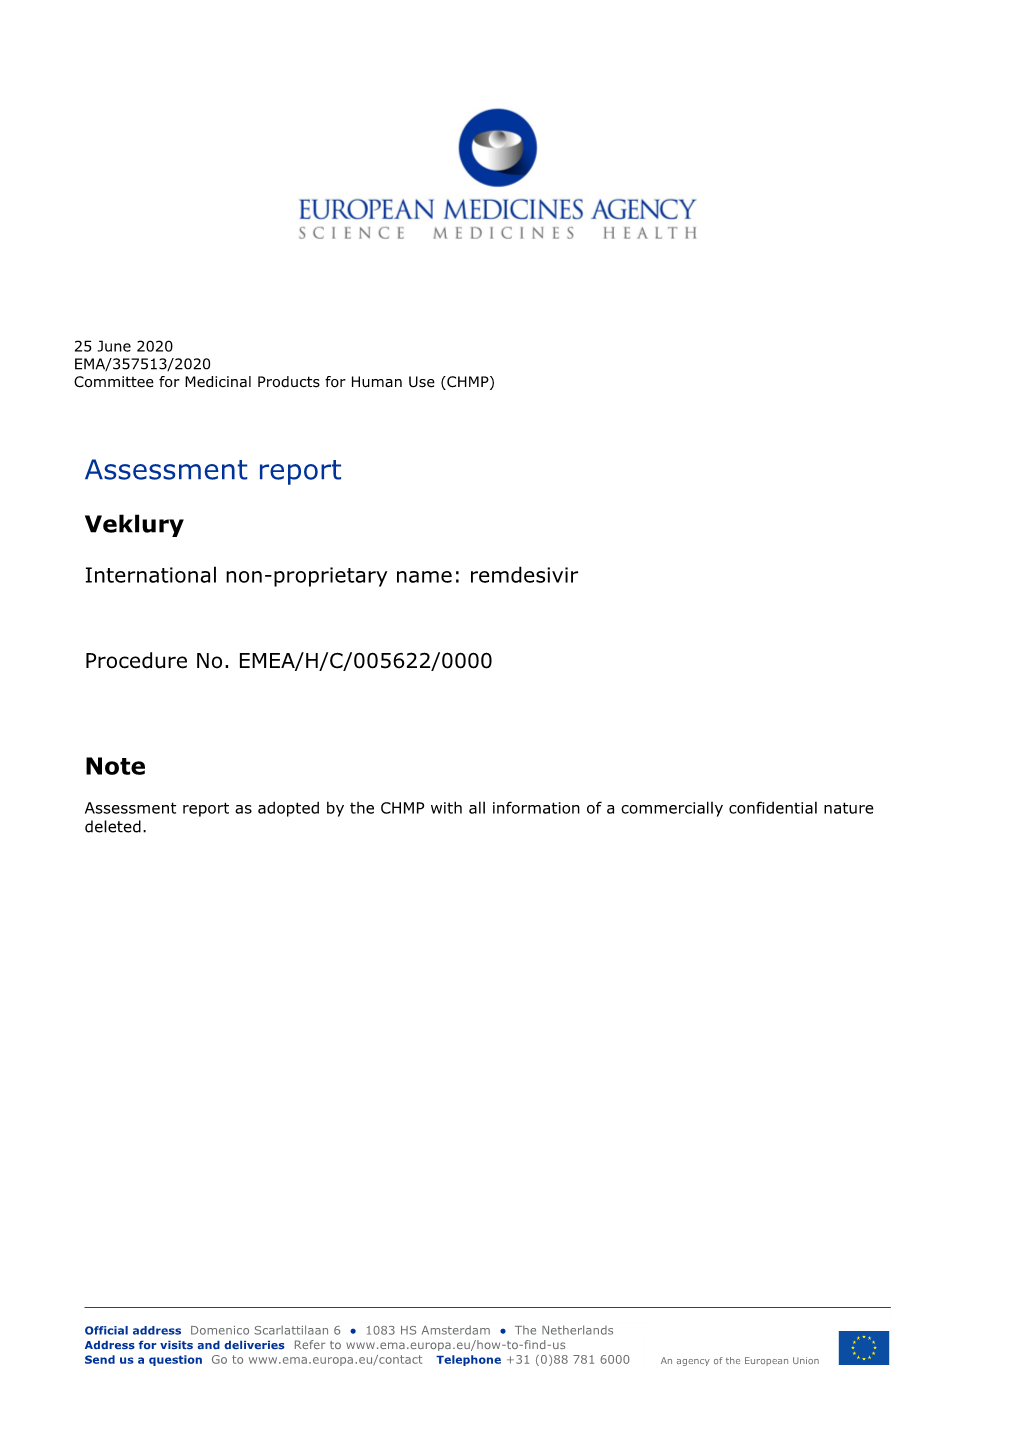 Veklury: Assessment Report